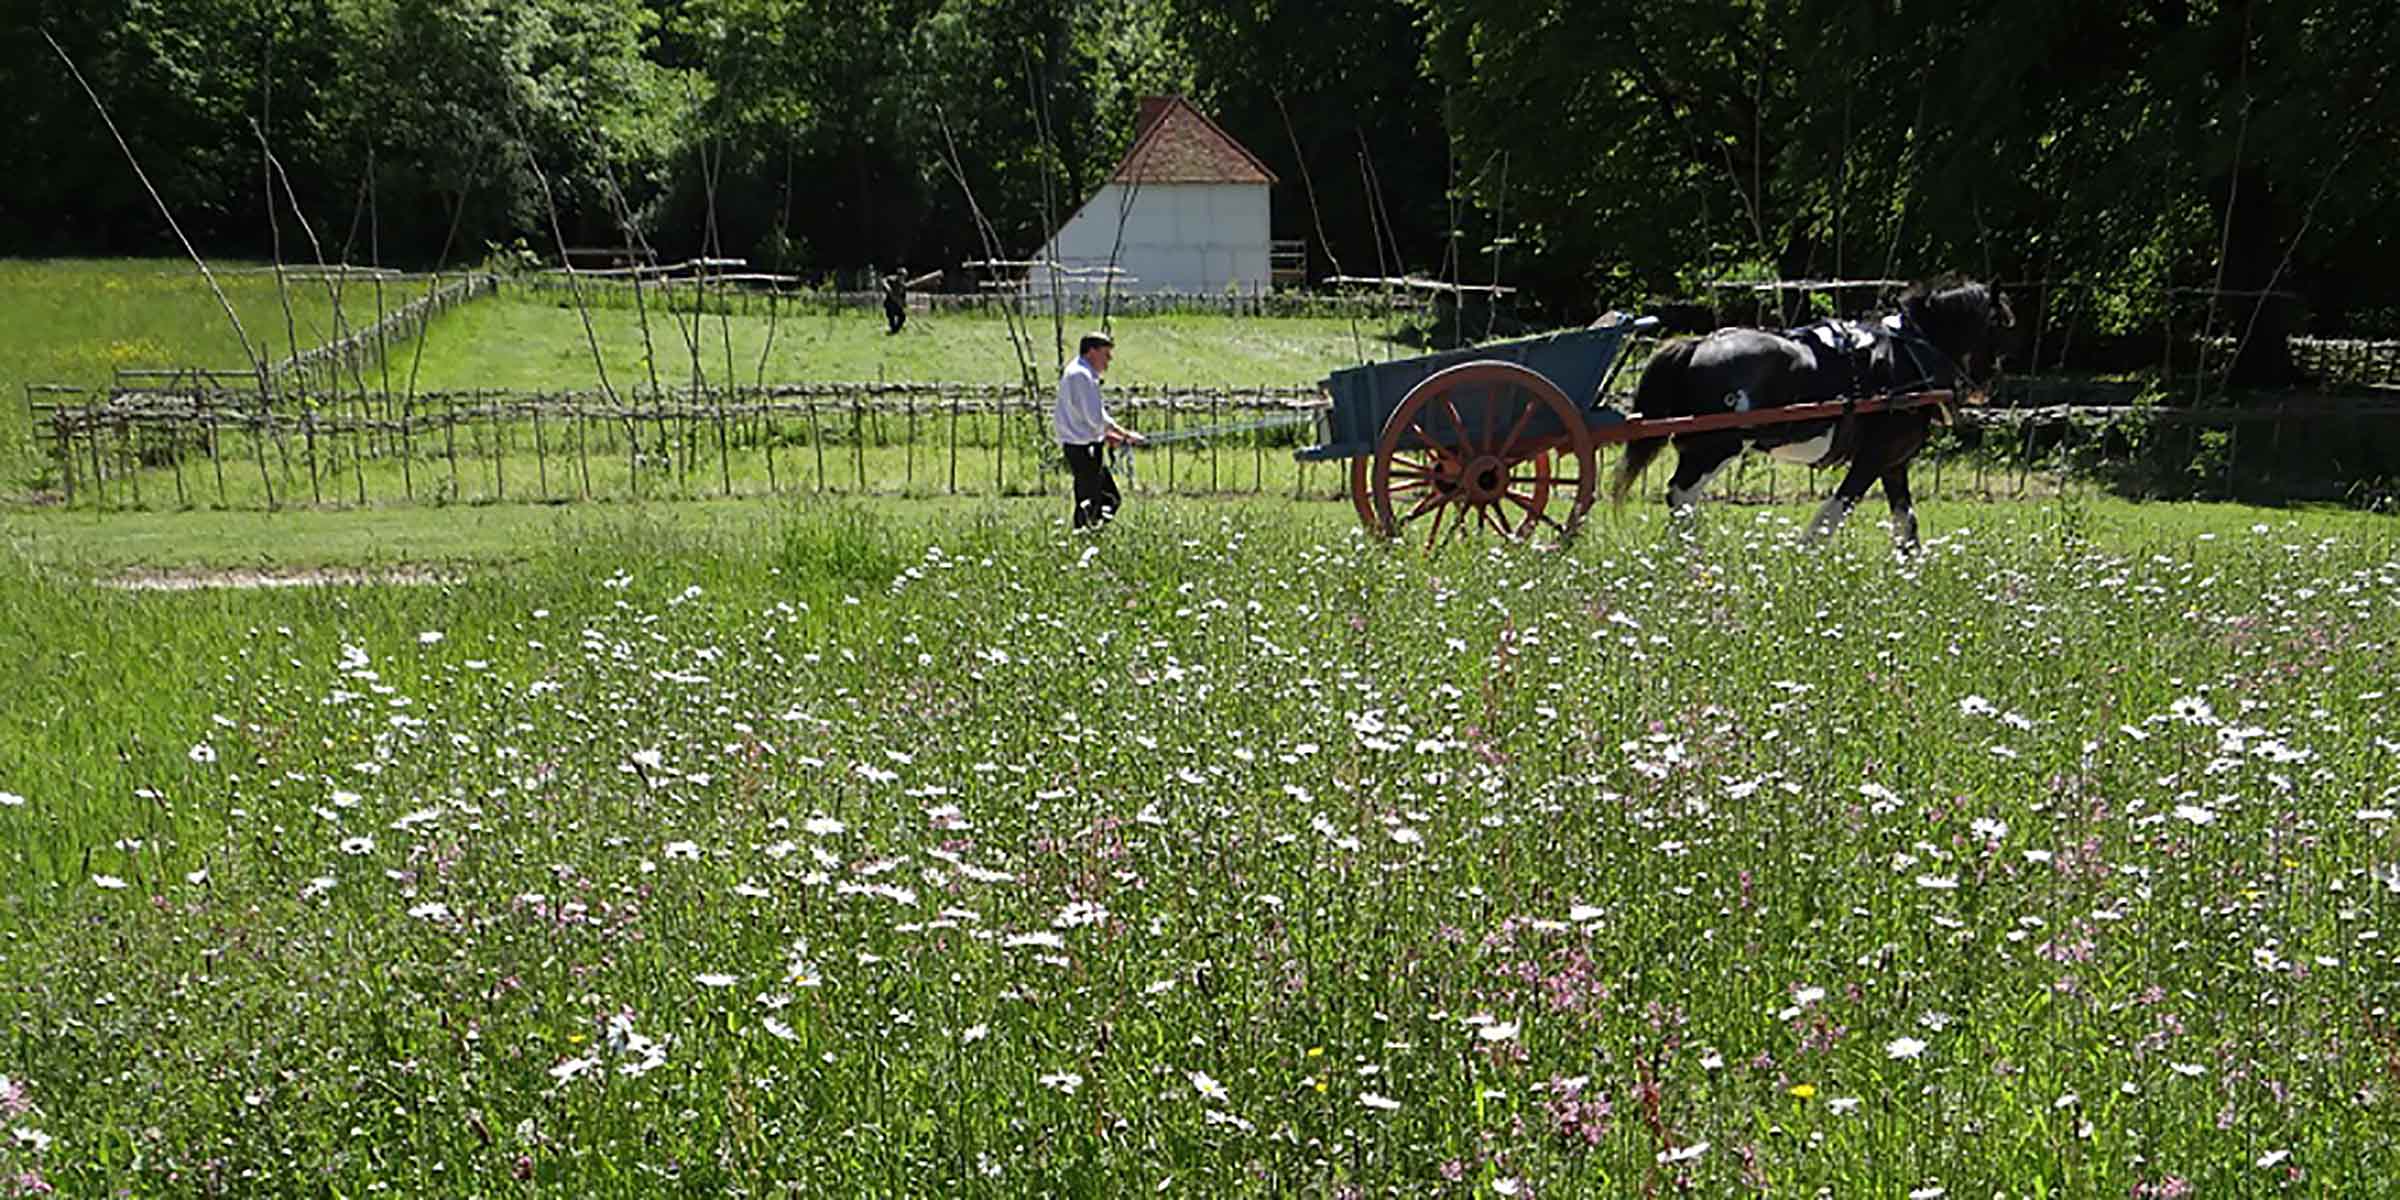 Wildflower meadow